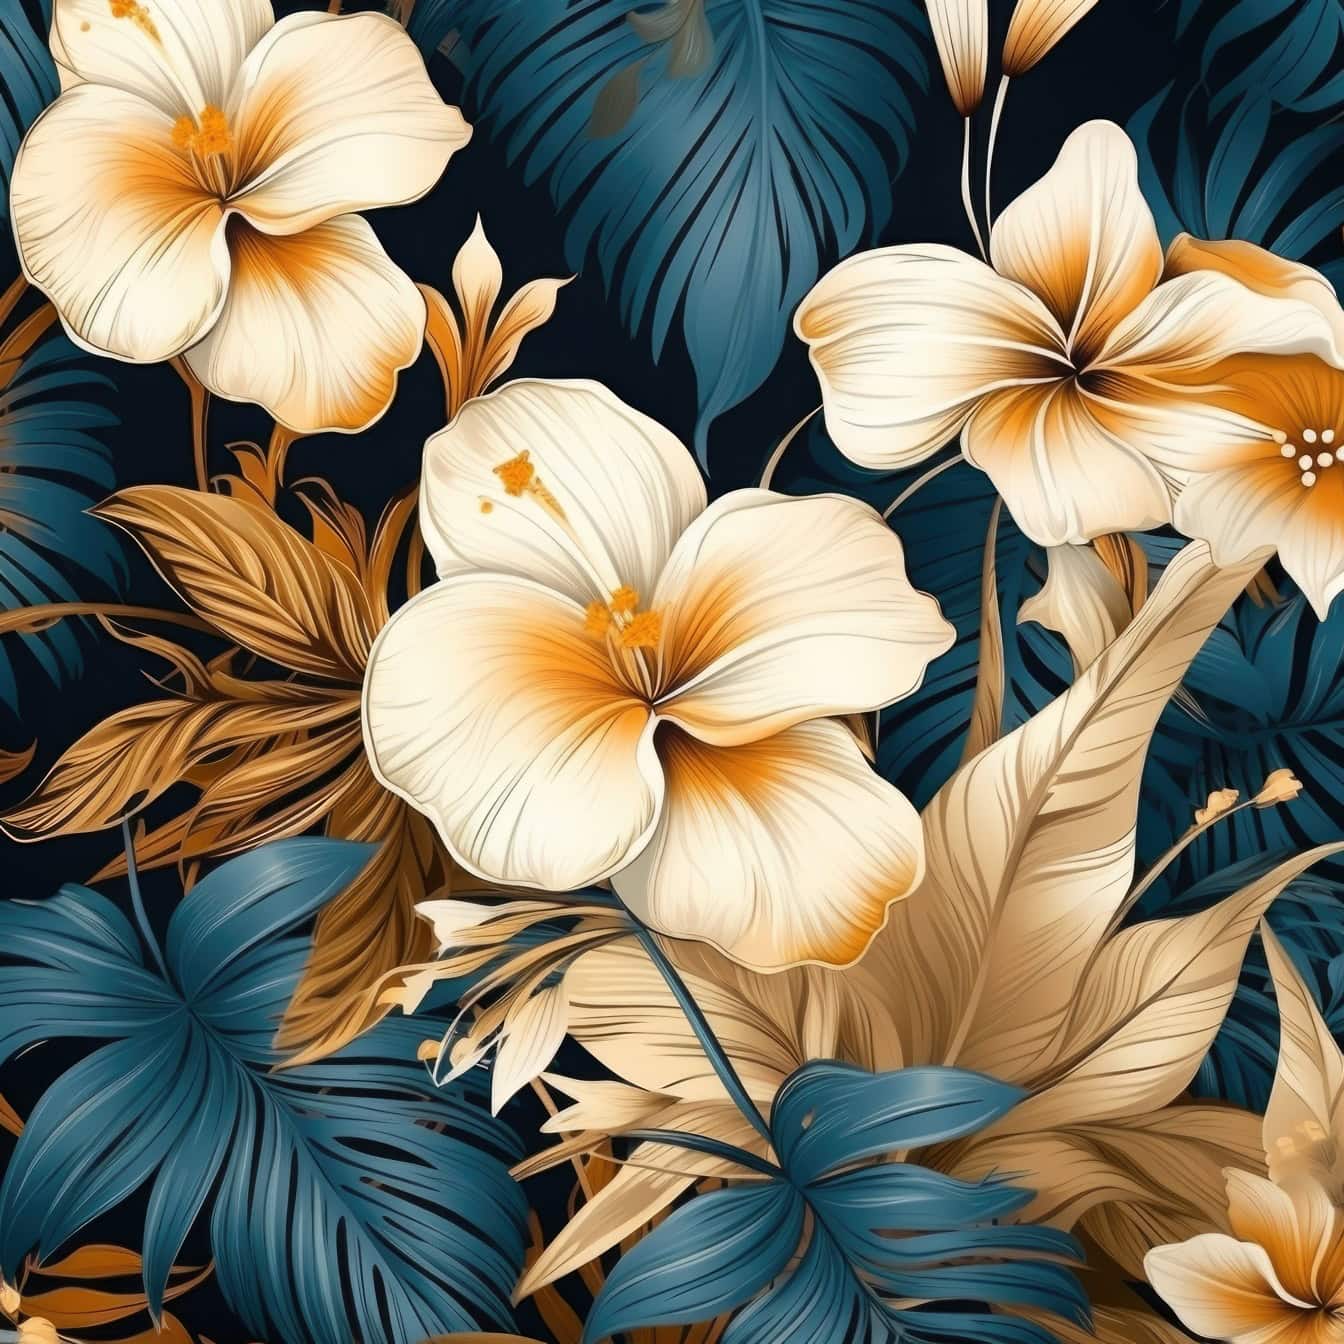 金棕色花朵的花卉图案，背景中是深蓝色的叶子